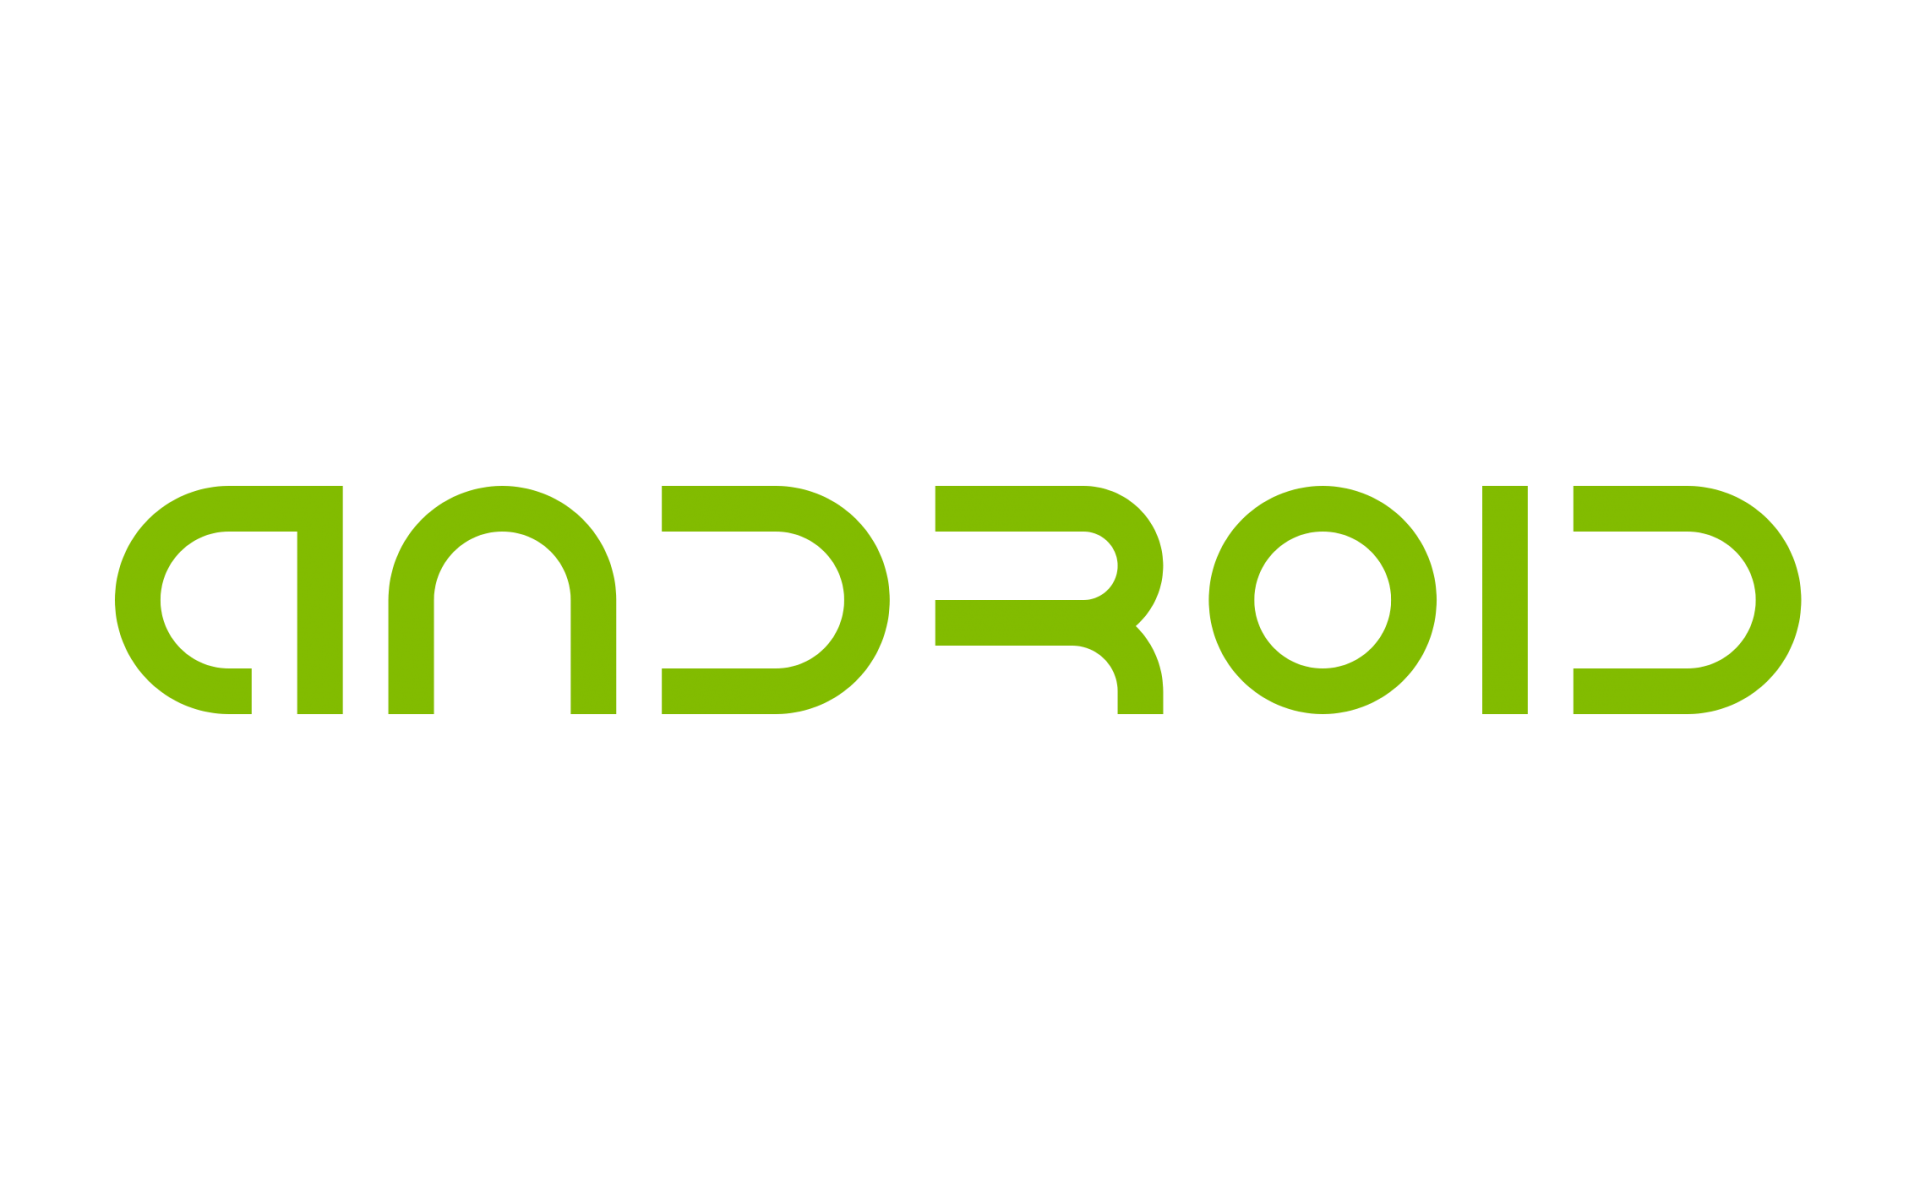 Gambar Android Transparan